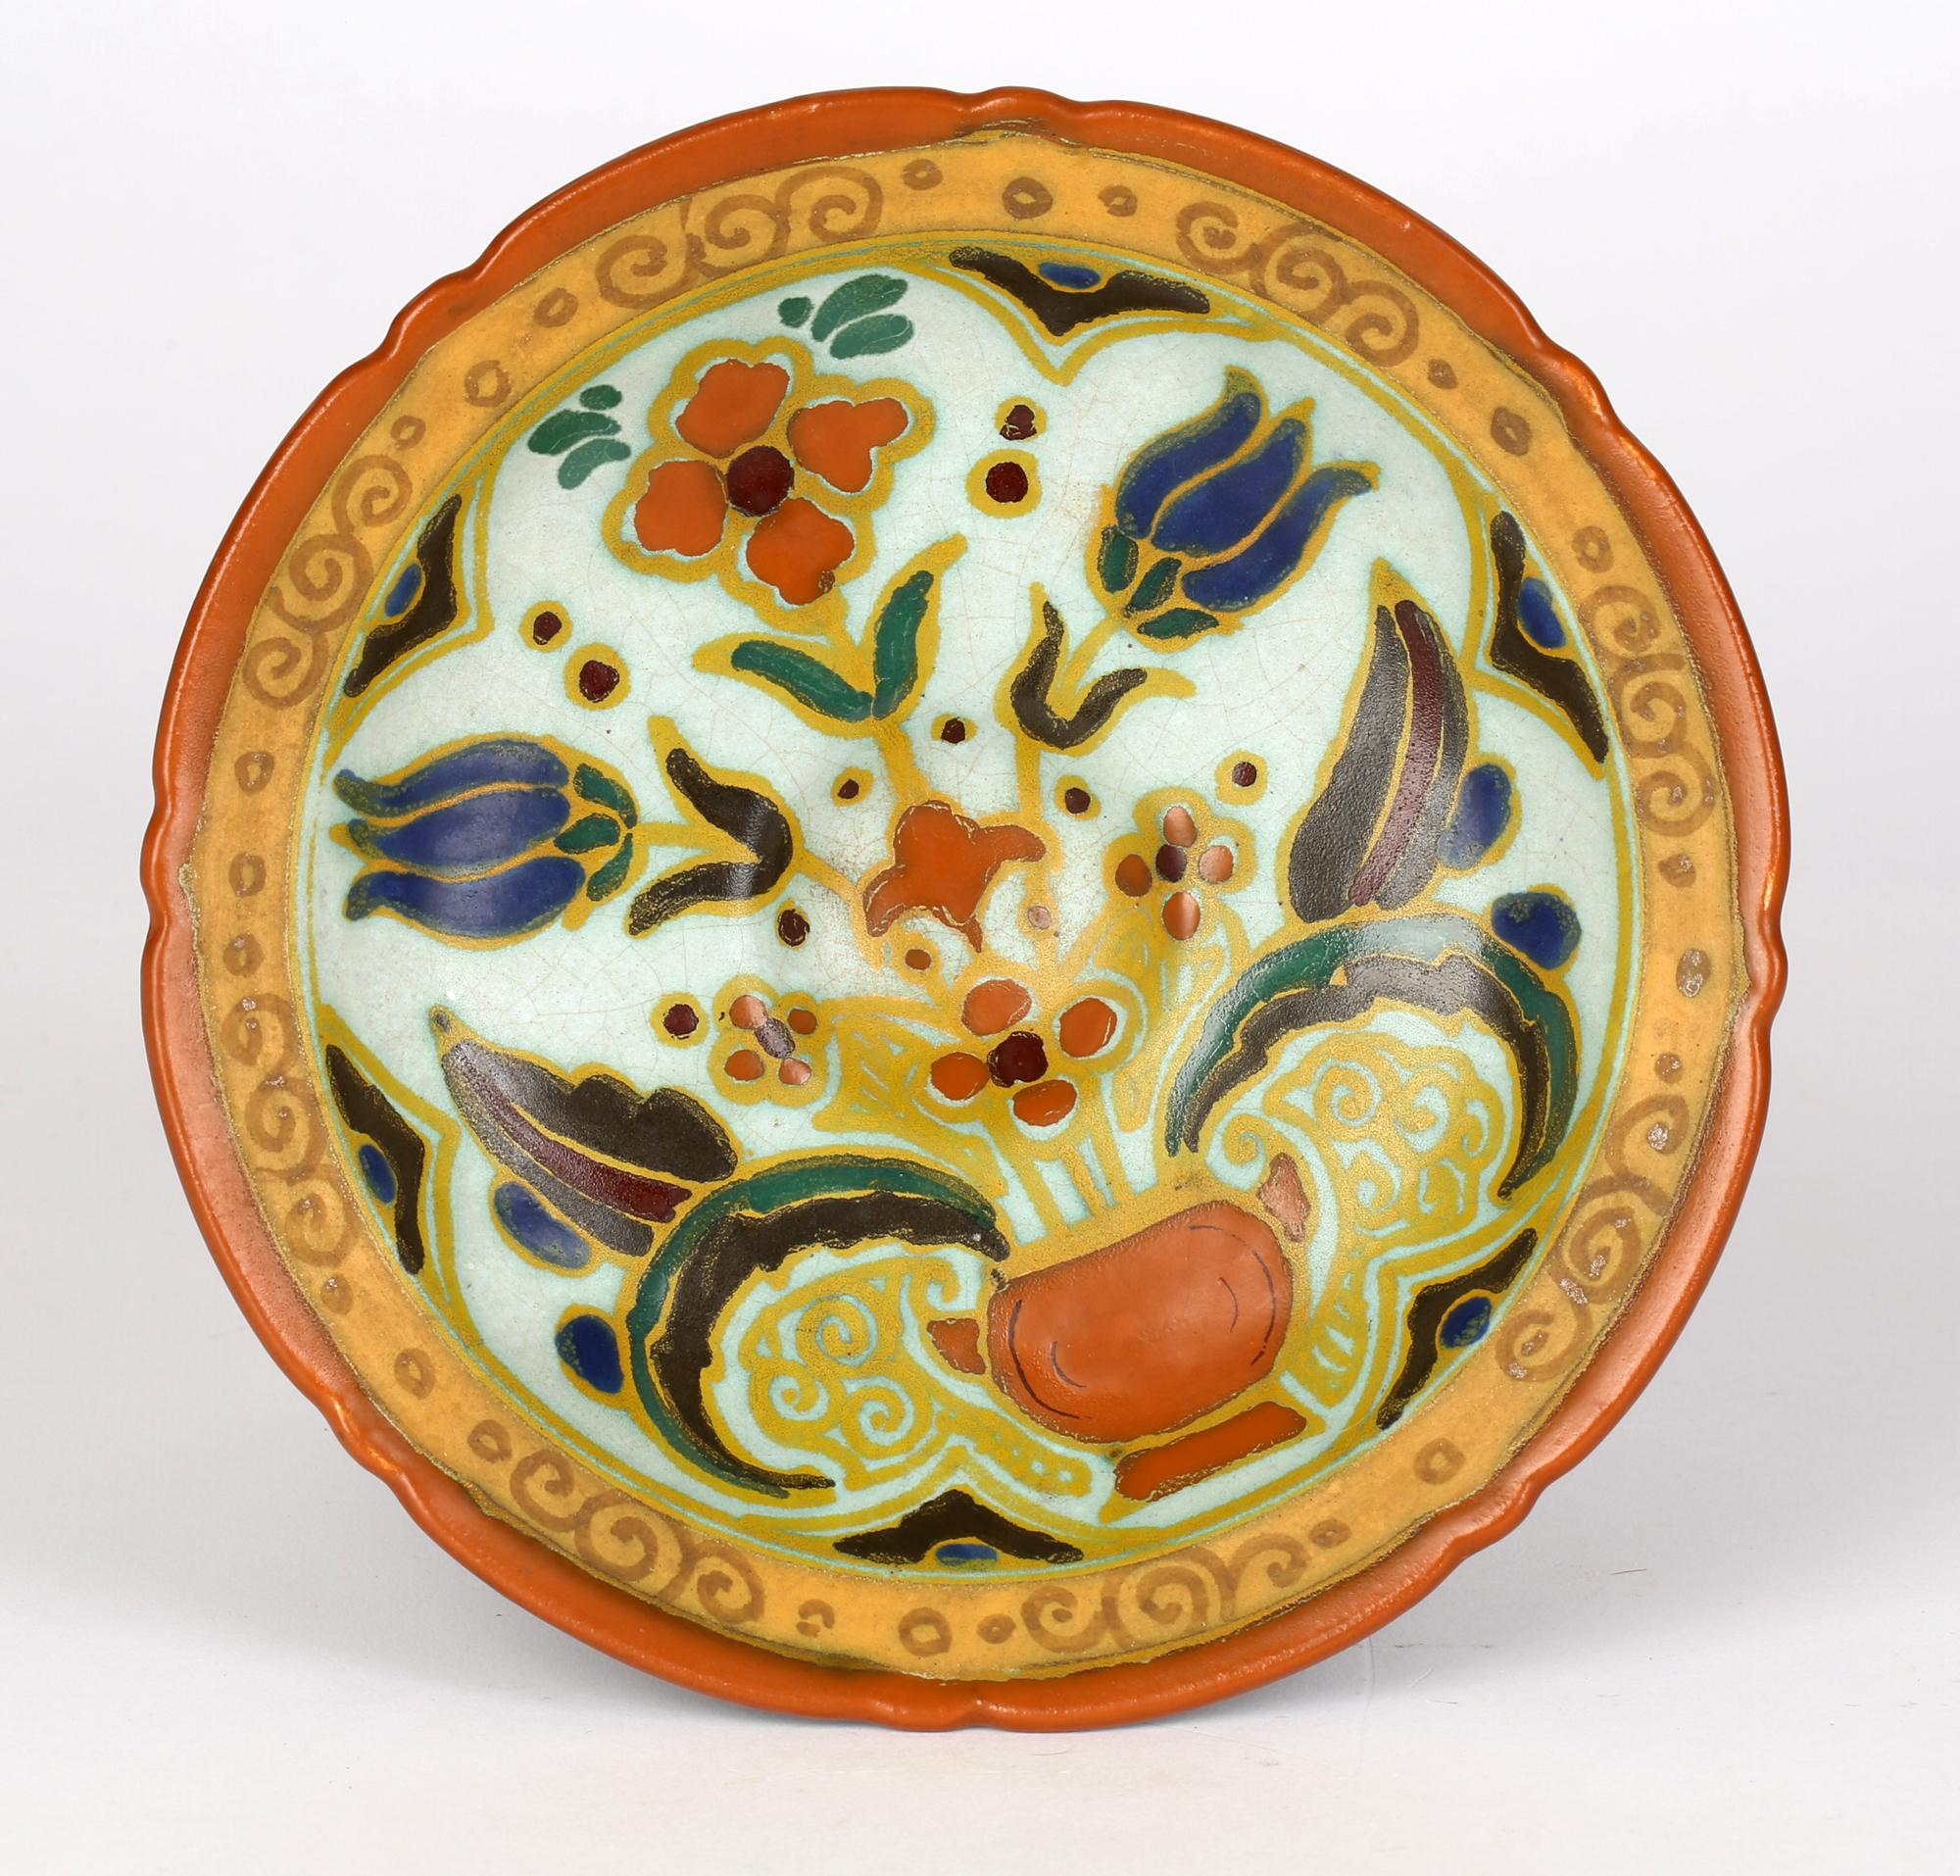 Une élégante poterie hollandaise Art déco peinte à la main dans un motif persan et fabriquée par la poterie d'Arnhem vers 1920. Le récipient repose sur un large pied arrondi légèrement bombé, avec une tige en forme de colonne, le sommet étant de